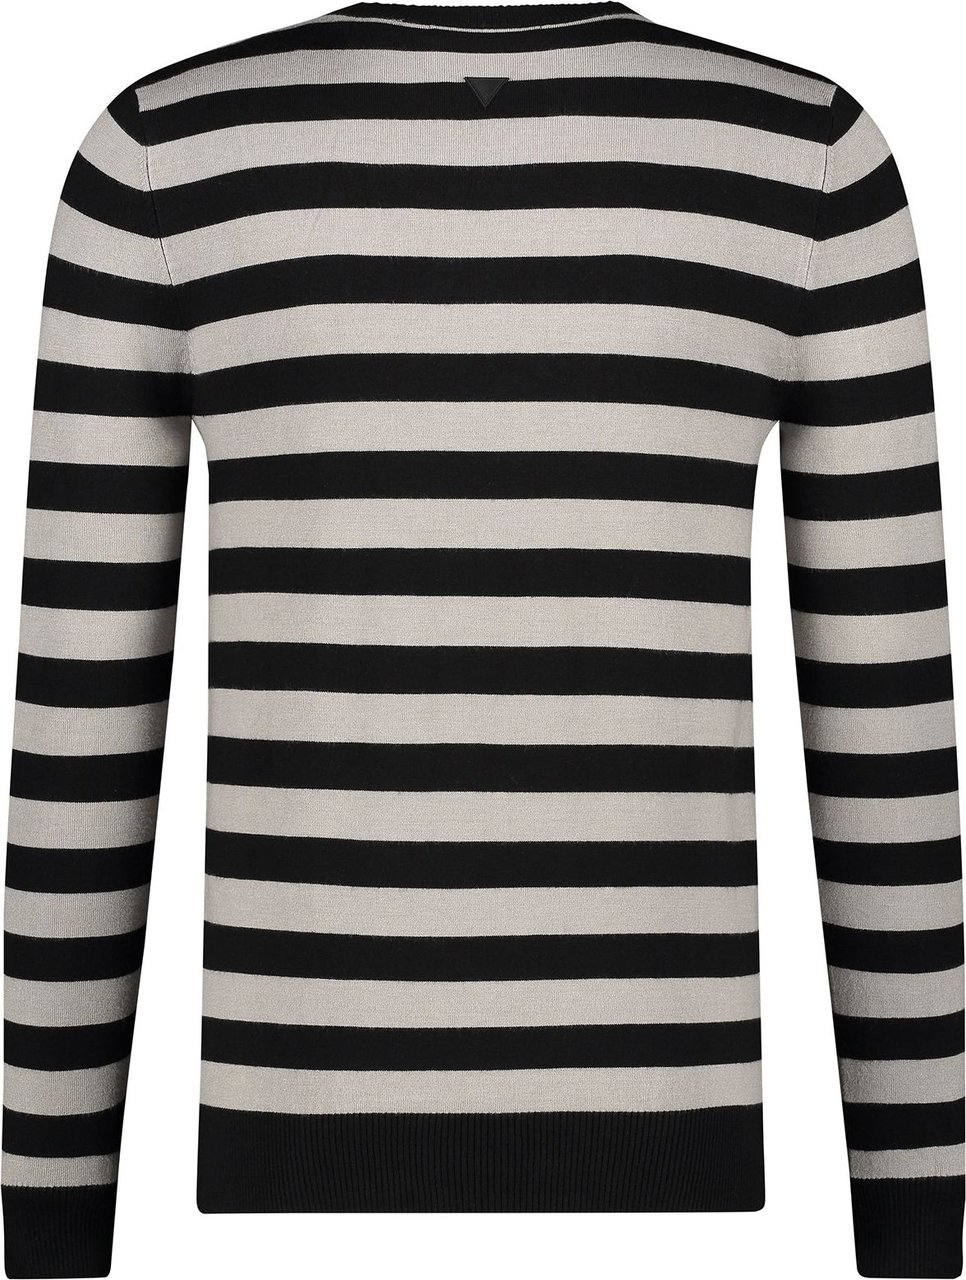 Purewhite Knitted Striped Sweater - Black / Grey Zwart